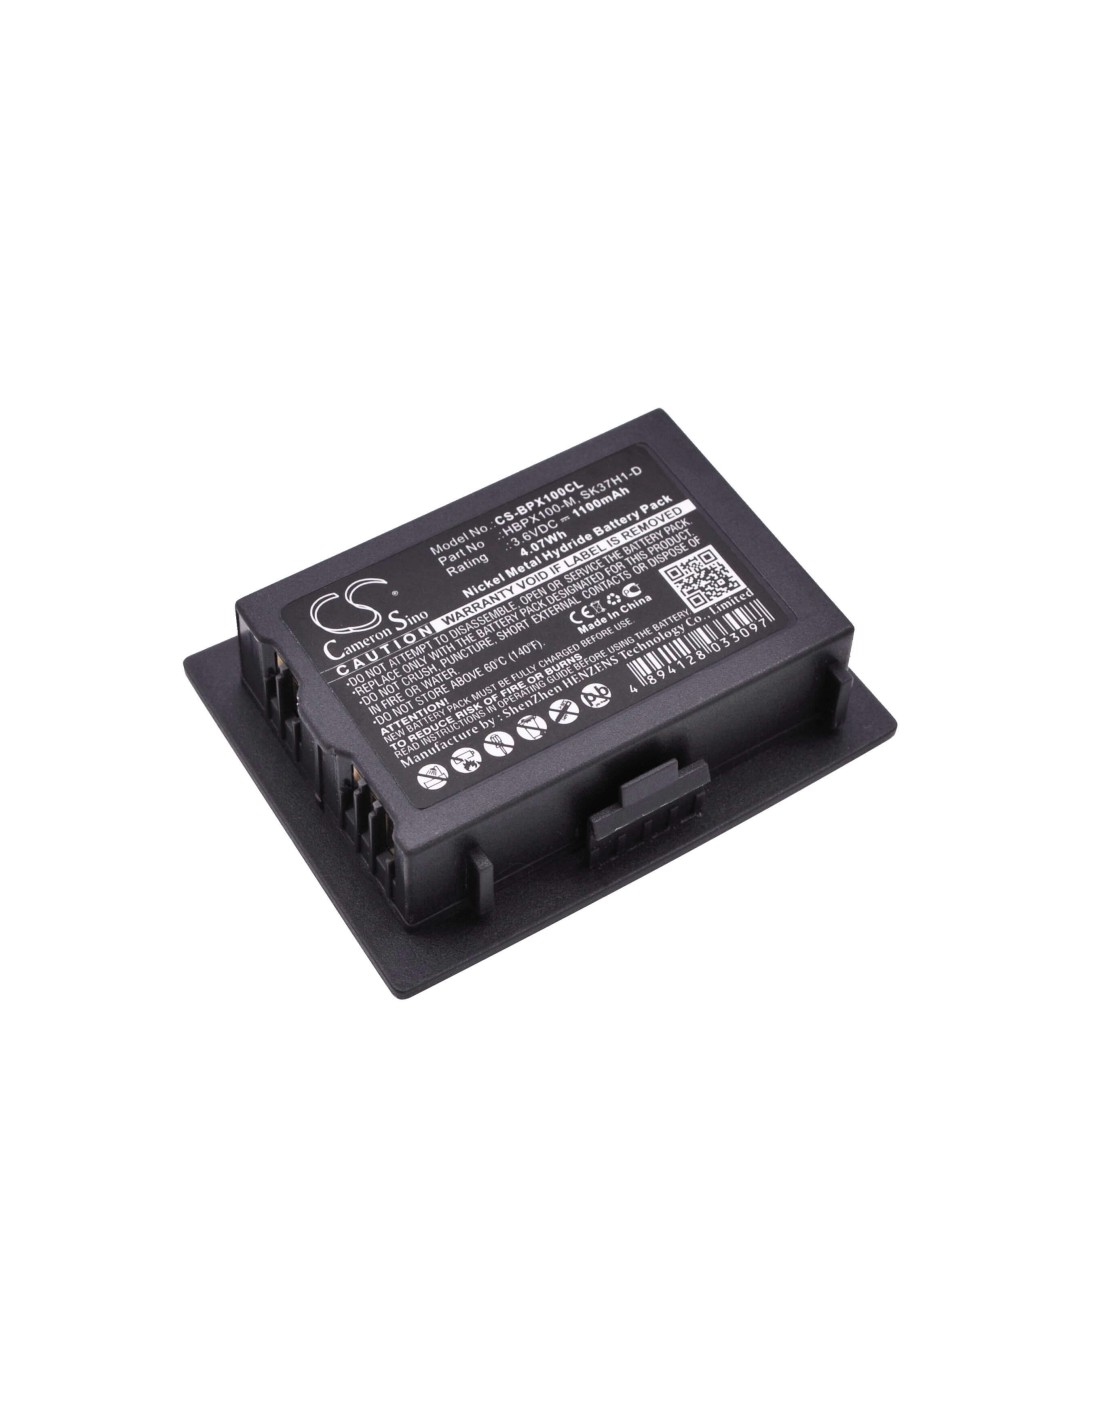 Battery for Netlink, I640 3.6V, 1100mAh - 3.96Wh